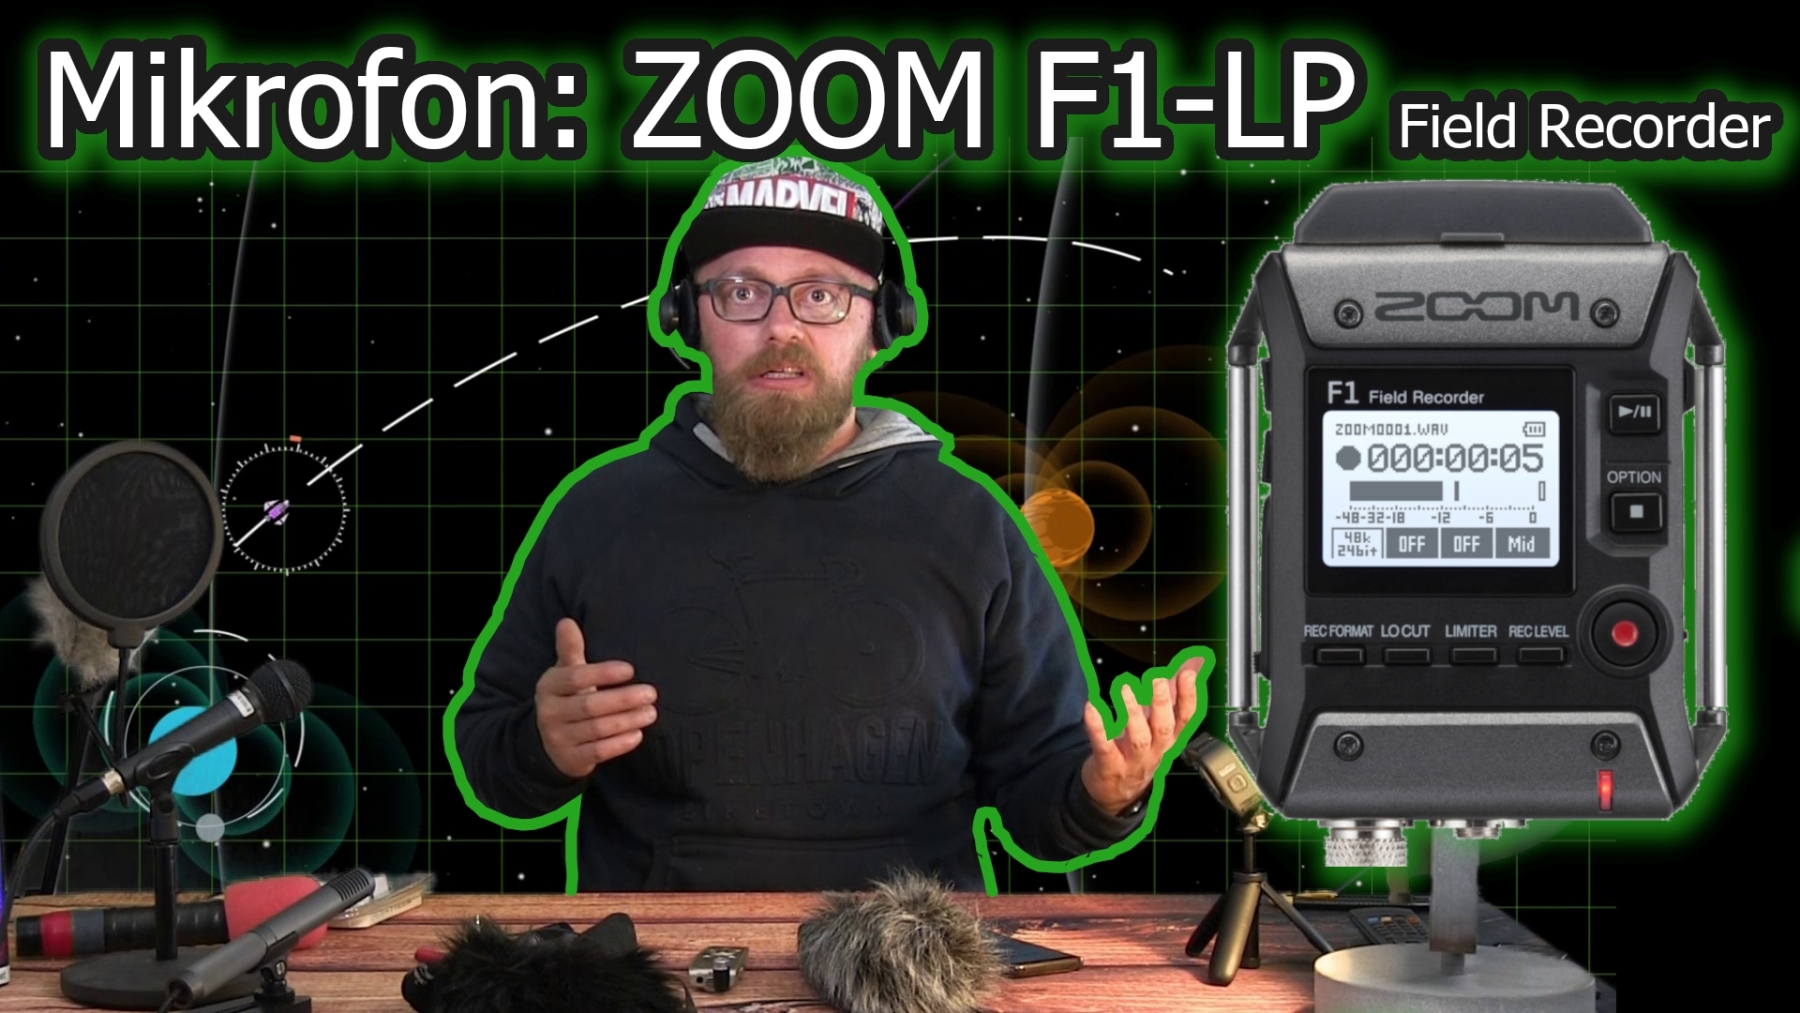 Zoom-F1-LP-Field-Recorder